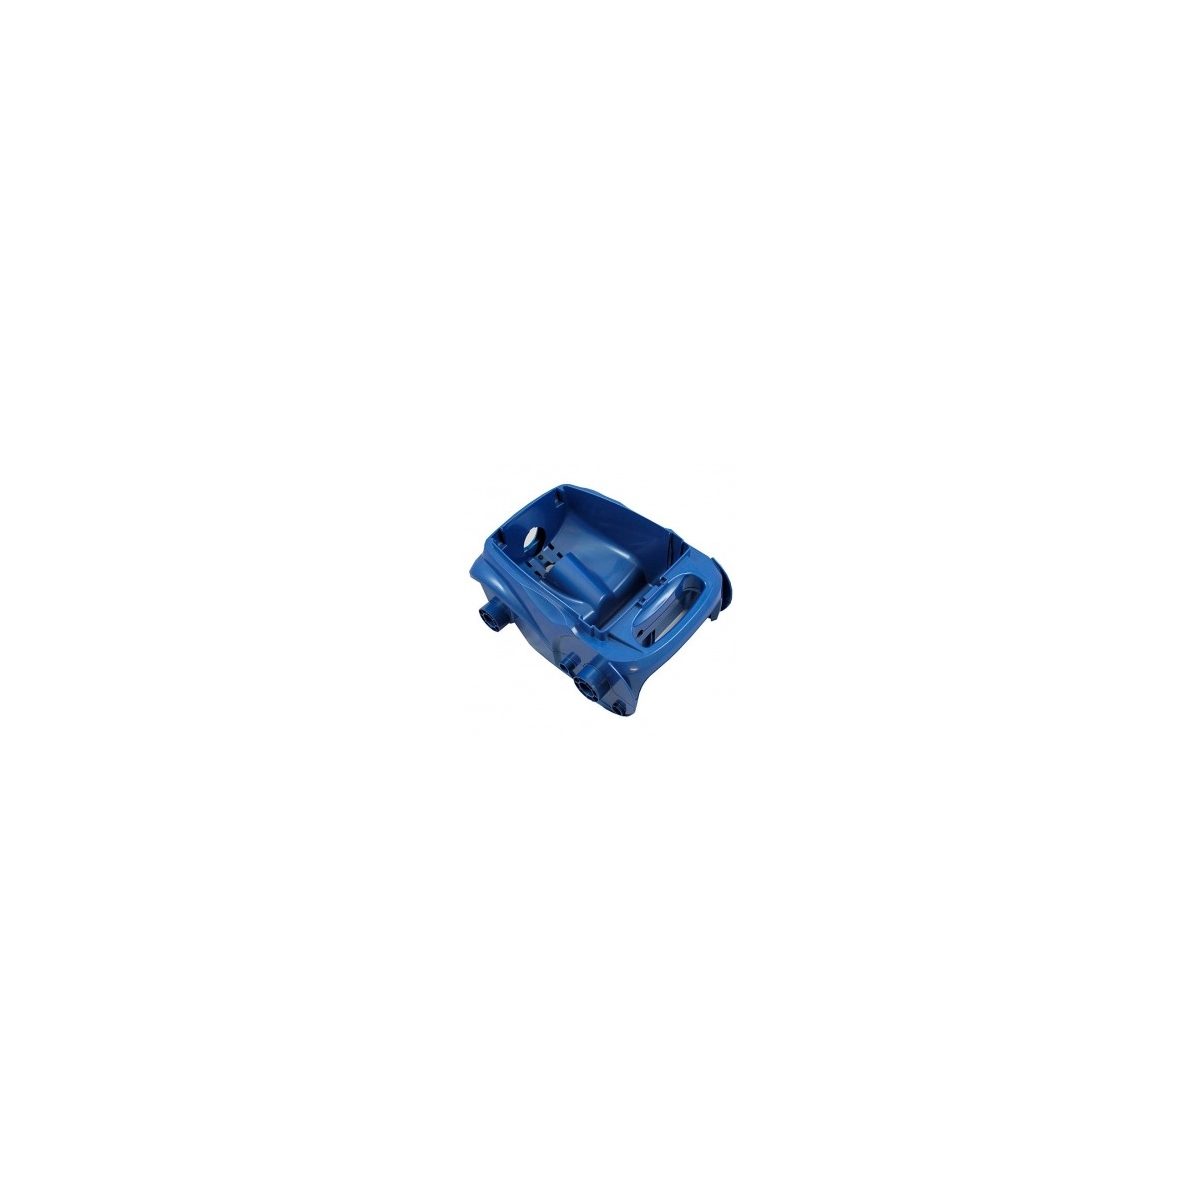 Cuerpo completo Zodiac Vortex 4WD azul R0539200